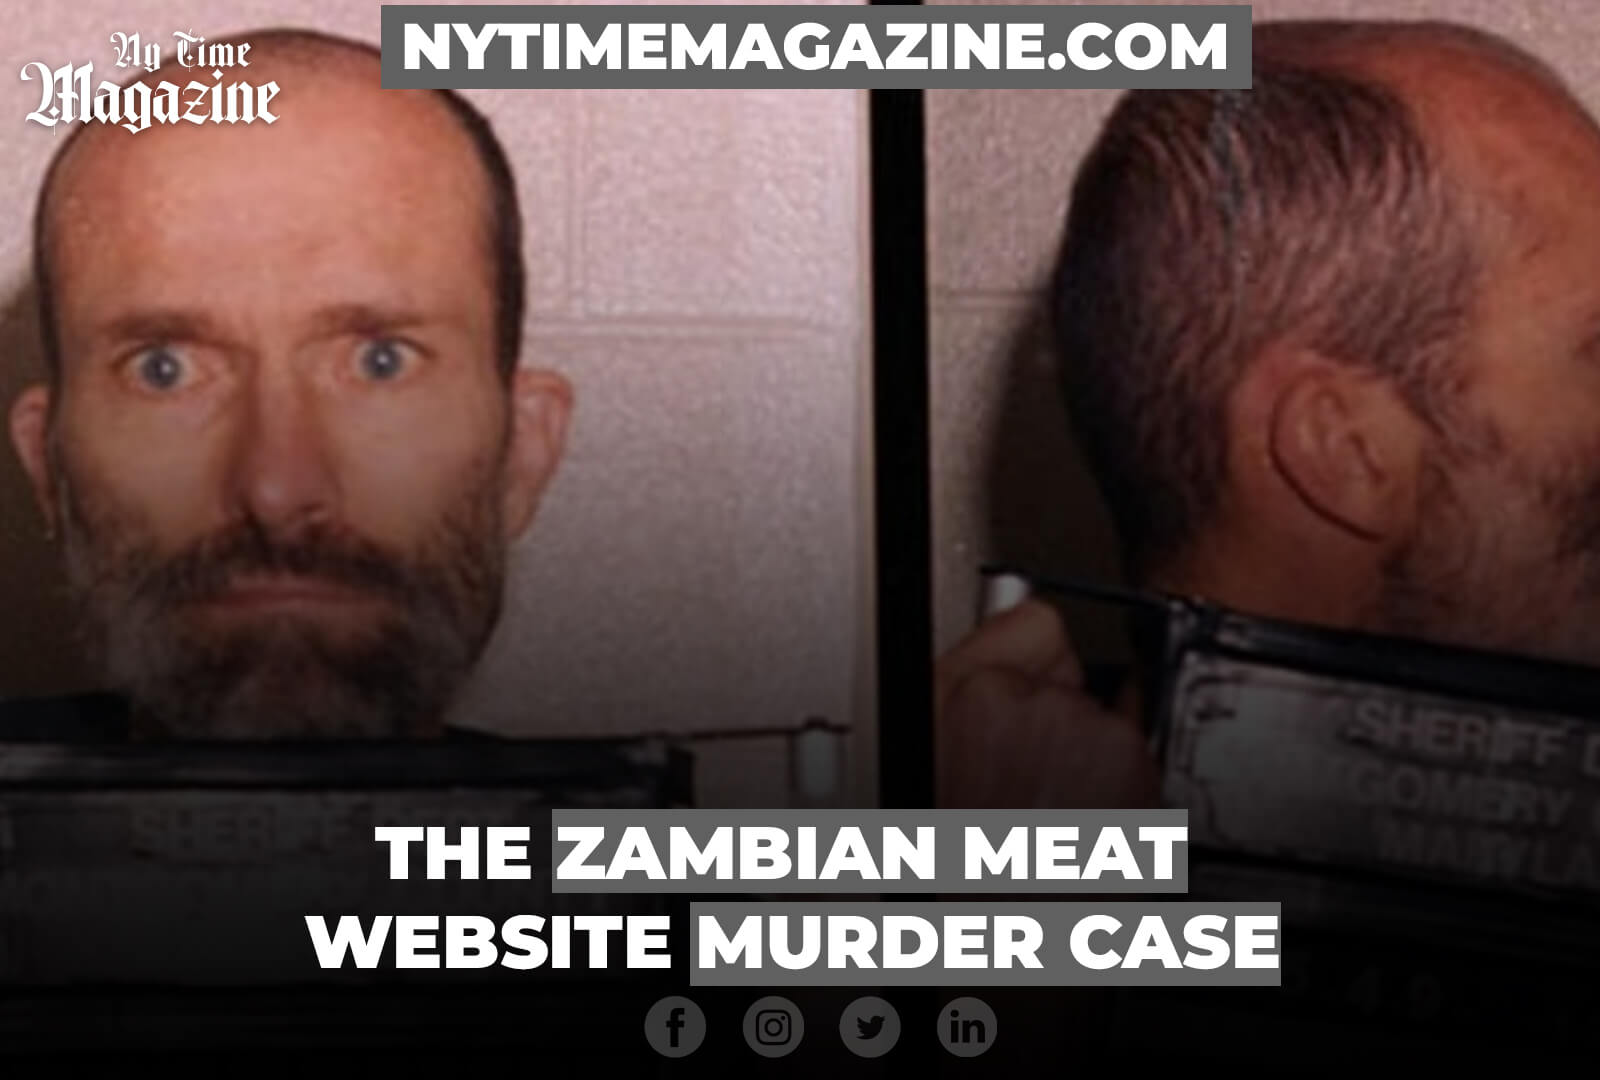 THE ZAMBIAN MEAT WEBSITE MURDER CASE